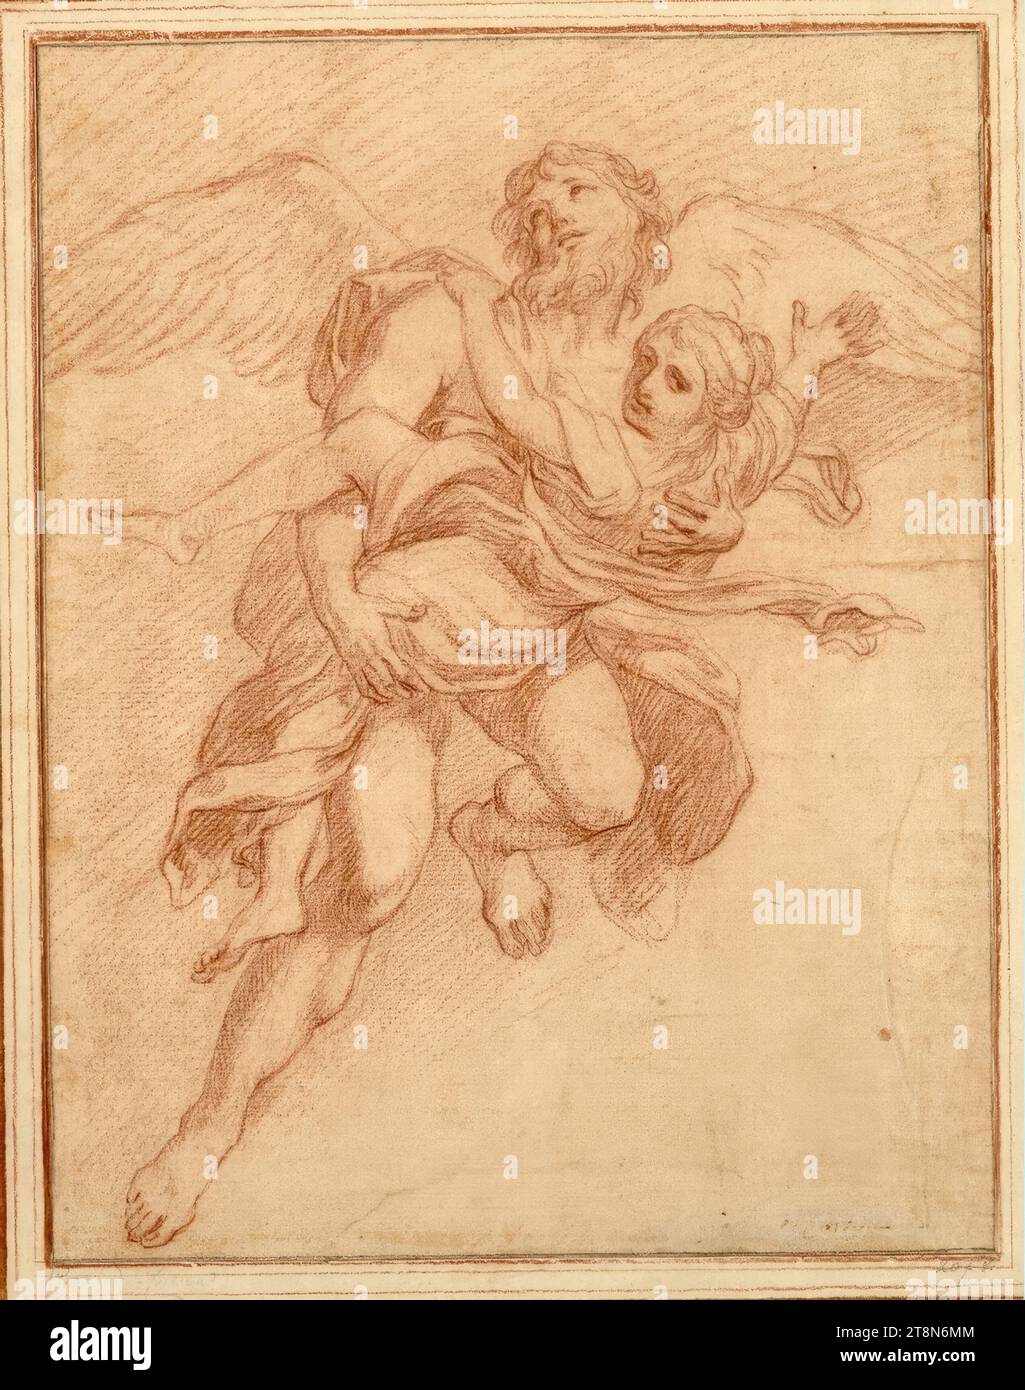 BOREAS vole l'Oreithyia., anonyme, Carlo Maratta (Camerano 1625 - 1713 Rome), dessin, craie rouge ; papier brunâtre, 31,5 x 24,8 cm, l. l. Duc Albert de Saxe-Teschen Banque D'Images